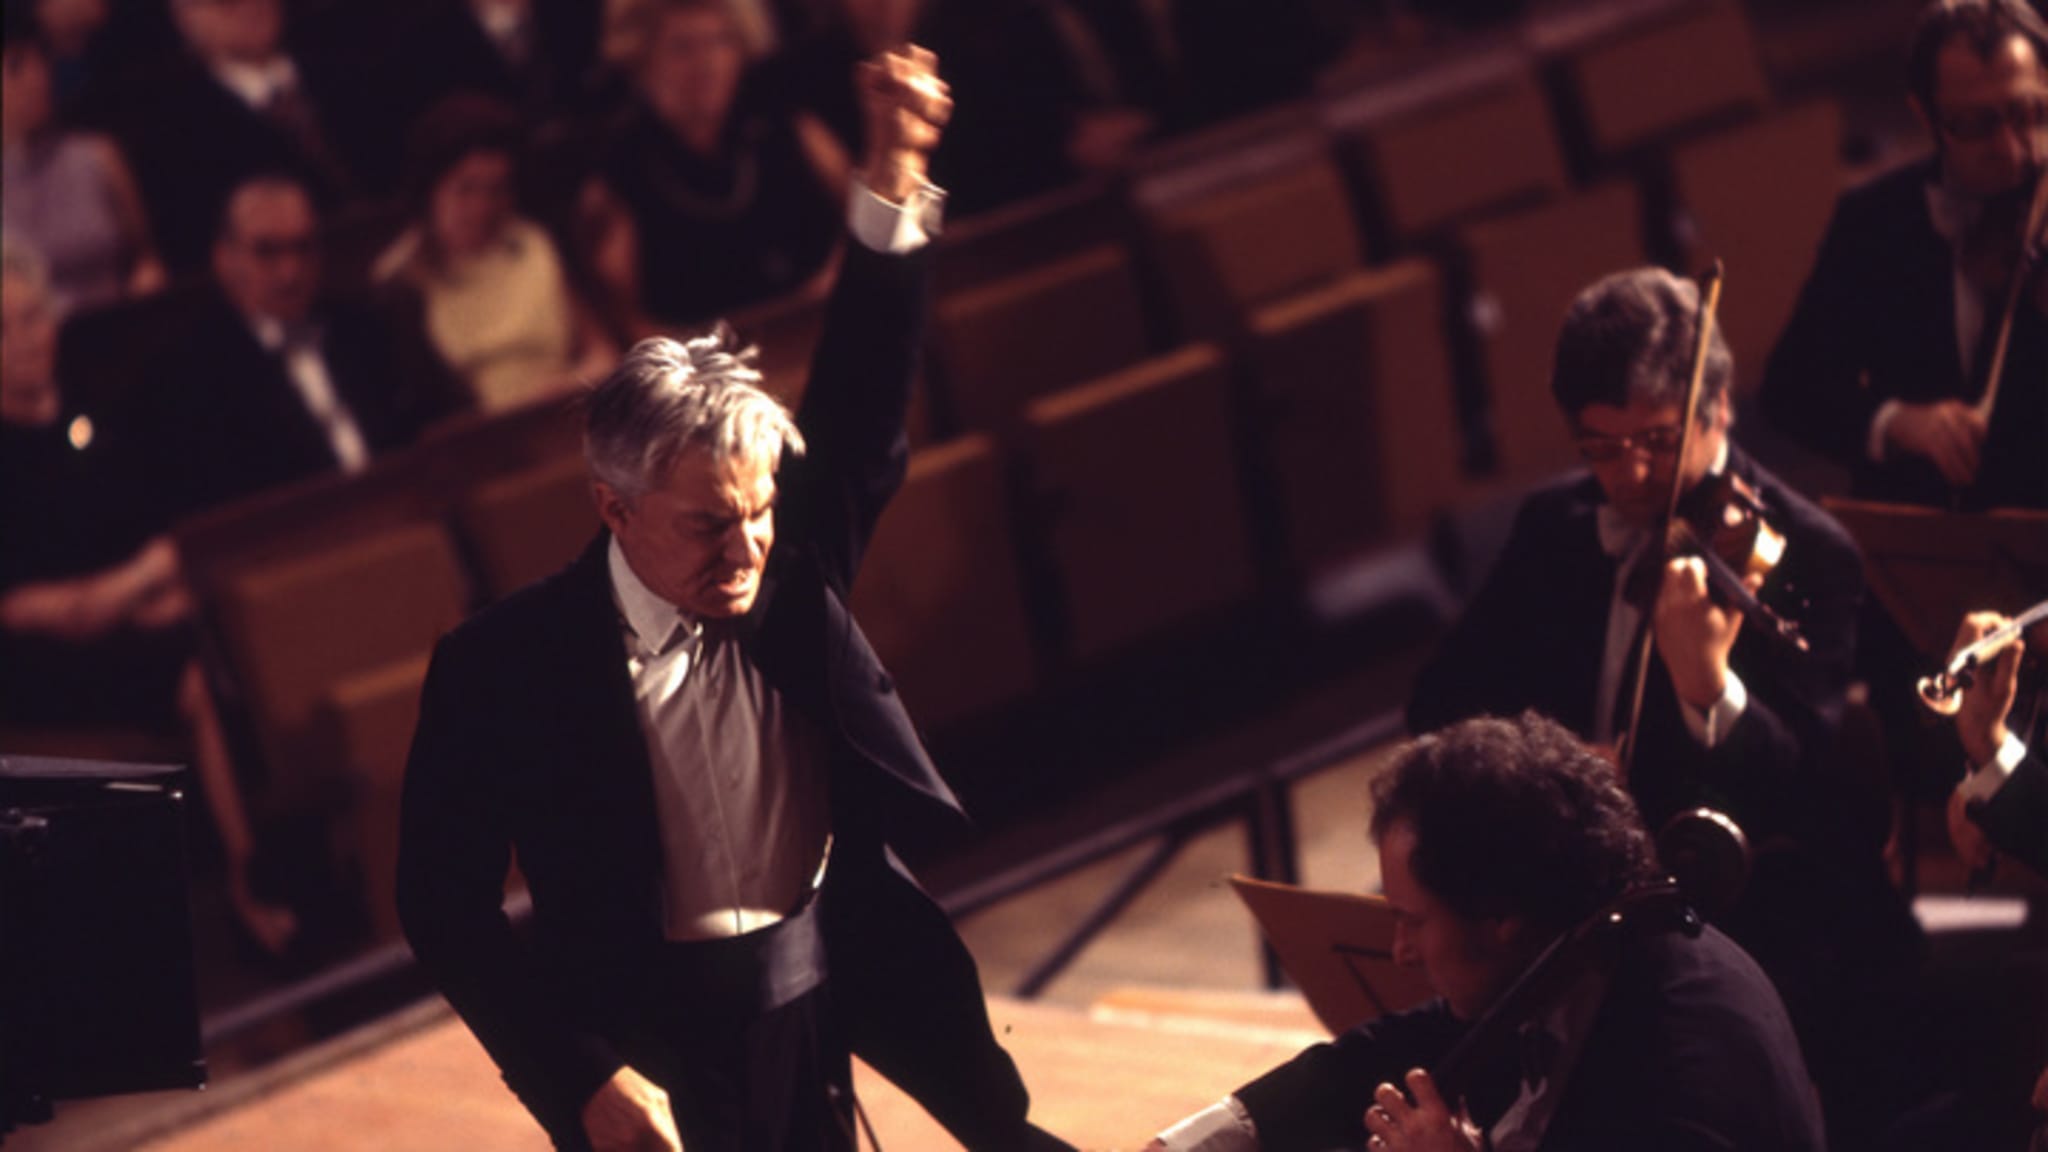 Deutsche Grammophon - Der offizielle Shop - Maestro: Music by Leonard  Bernstein (OST) - Yannick-Nézet-Séguin, Bradley Cooper, London Symphony  Orchestra - CD